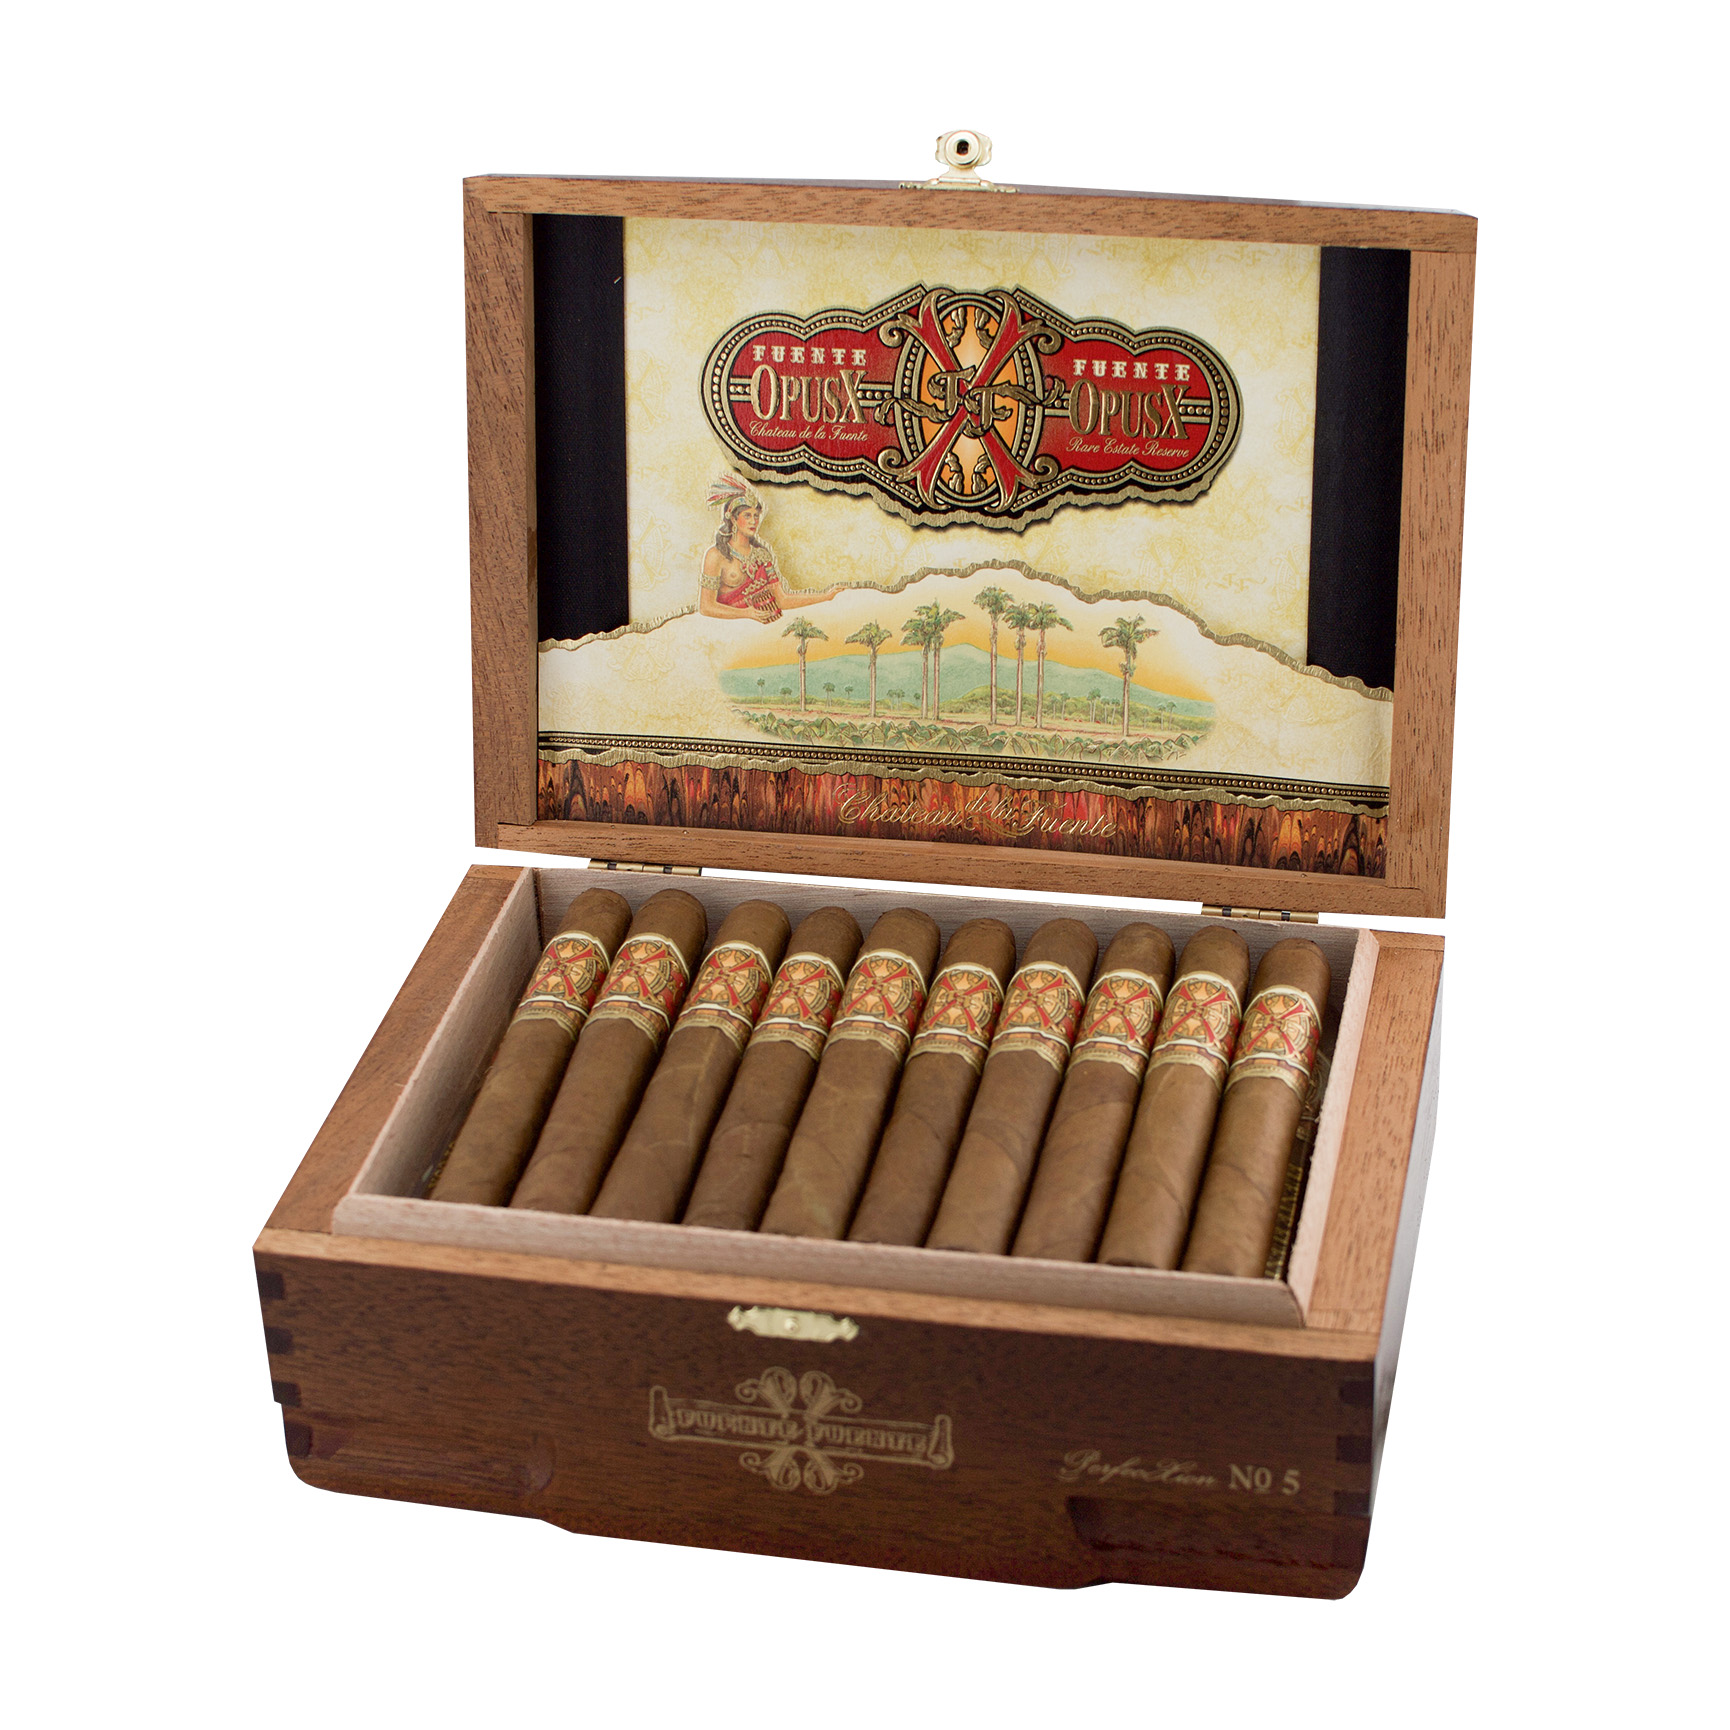 Arturo Fuente OpusX PerfecXion No. 5 Cigar - Box